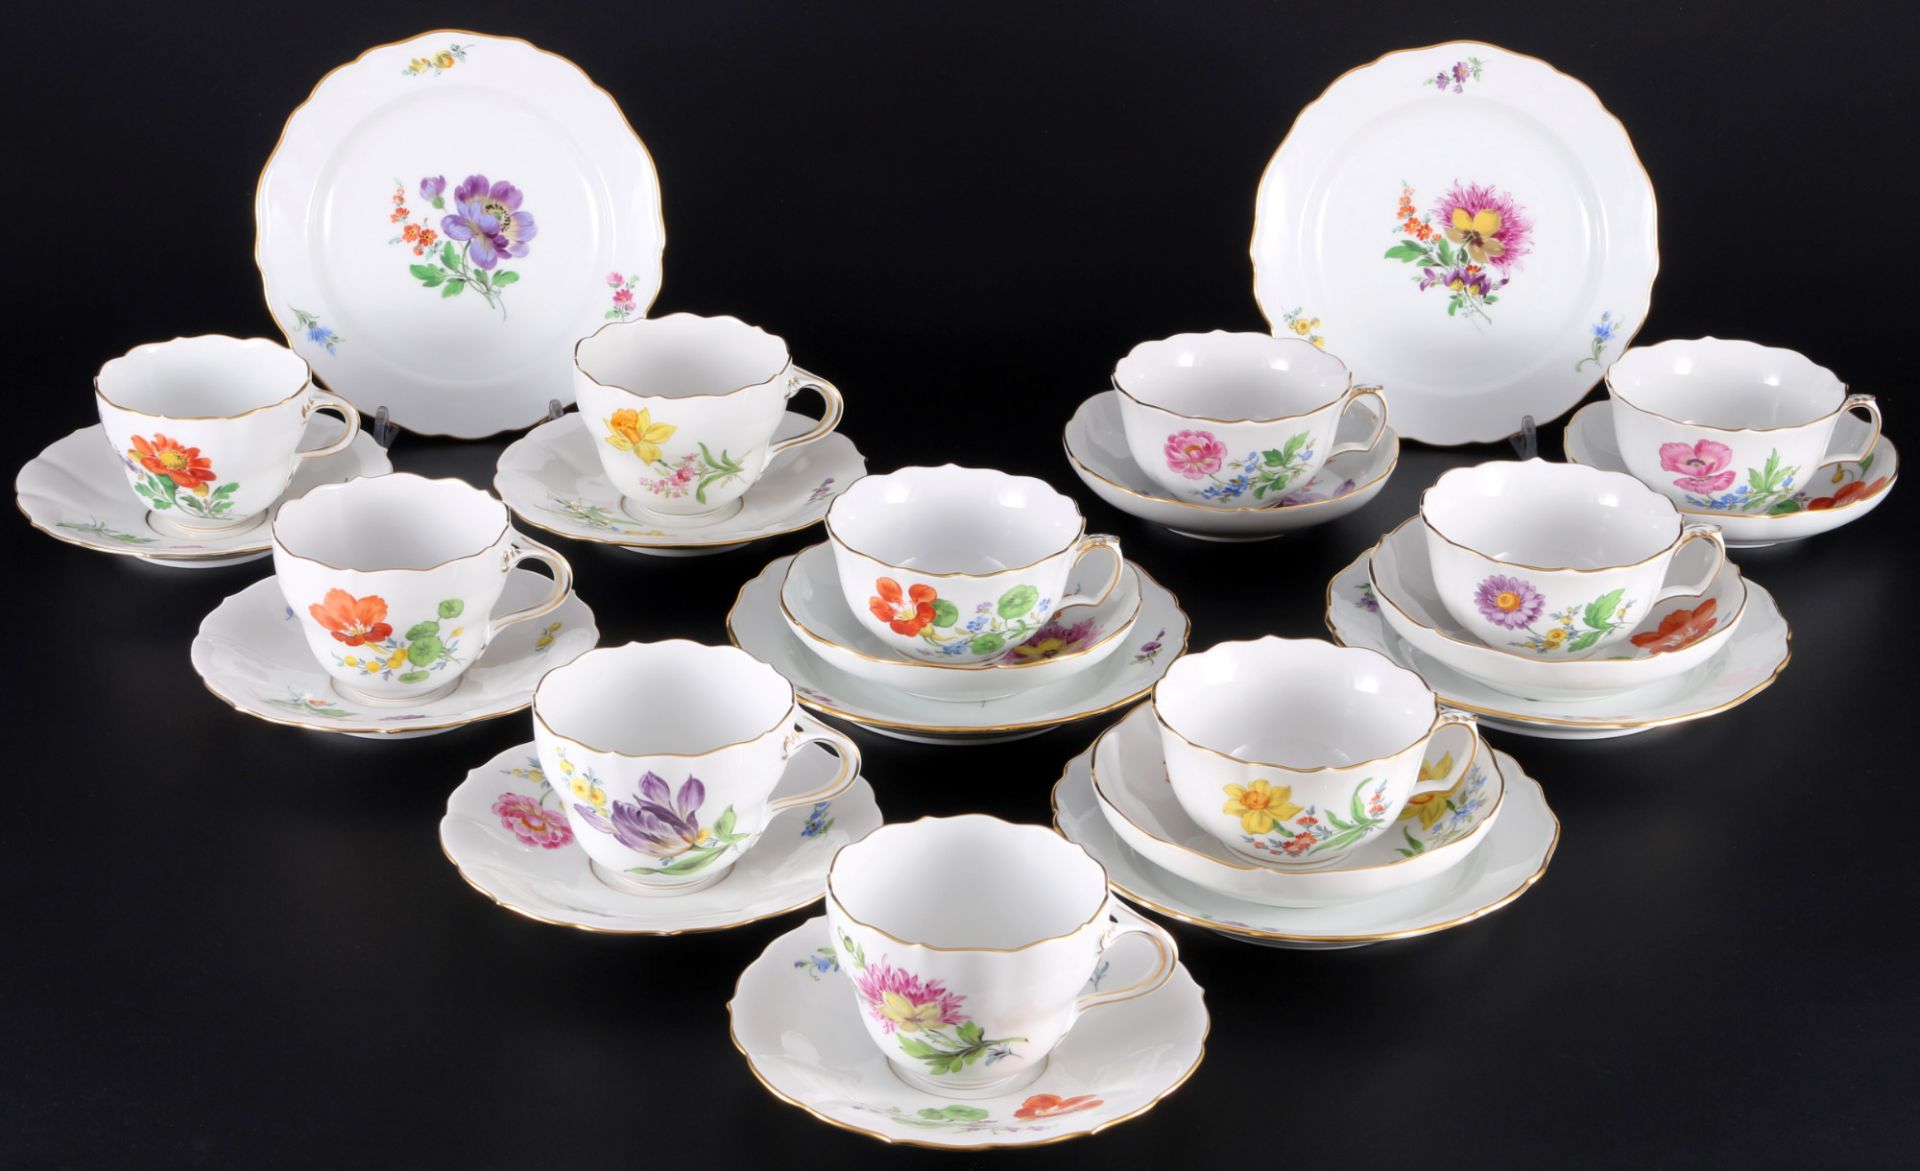 Meissen Blumen 5 Kaffeegedecke und 5 Teetassen 1.Wahl, coffee and tea cups with one set of plates 1s